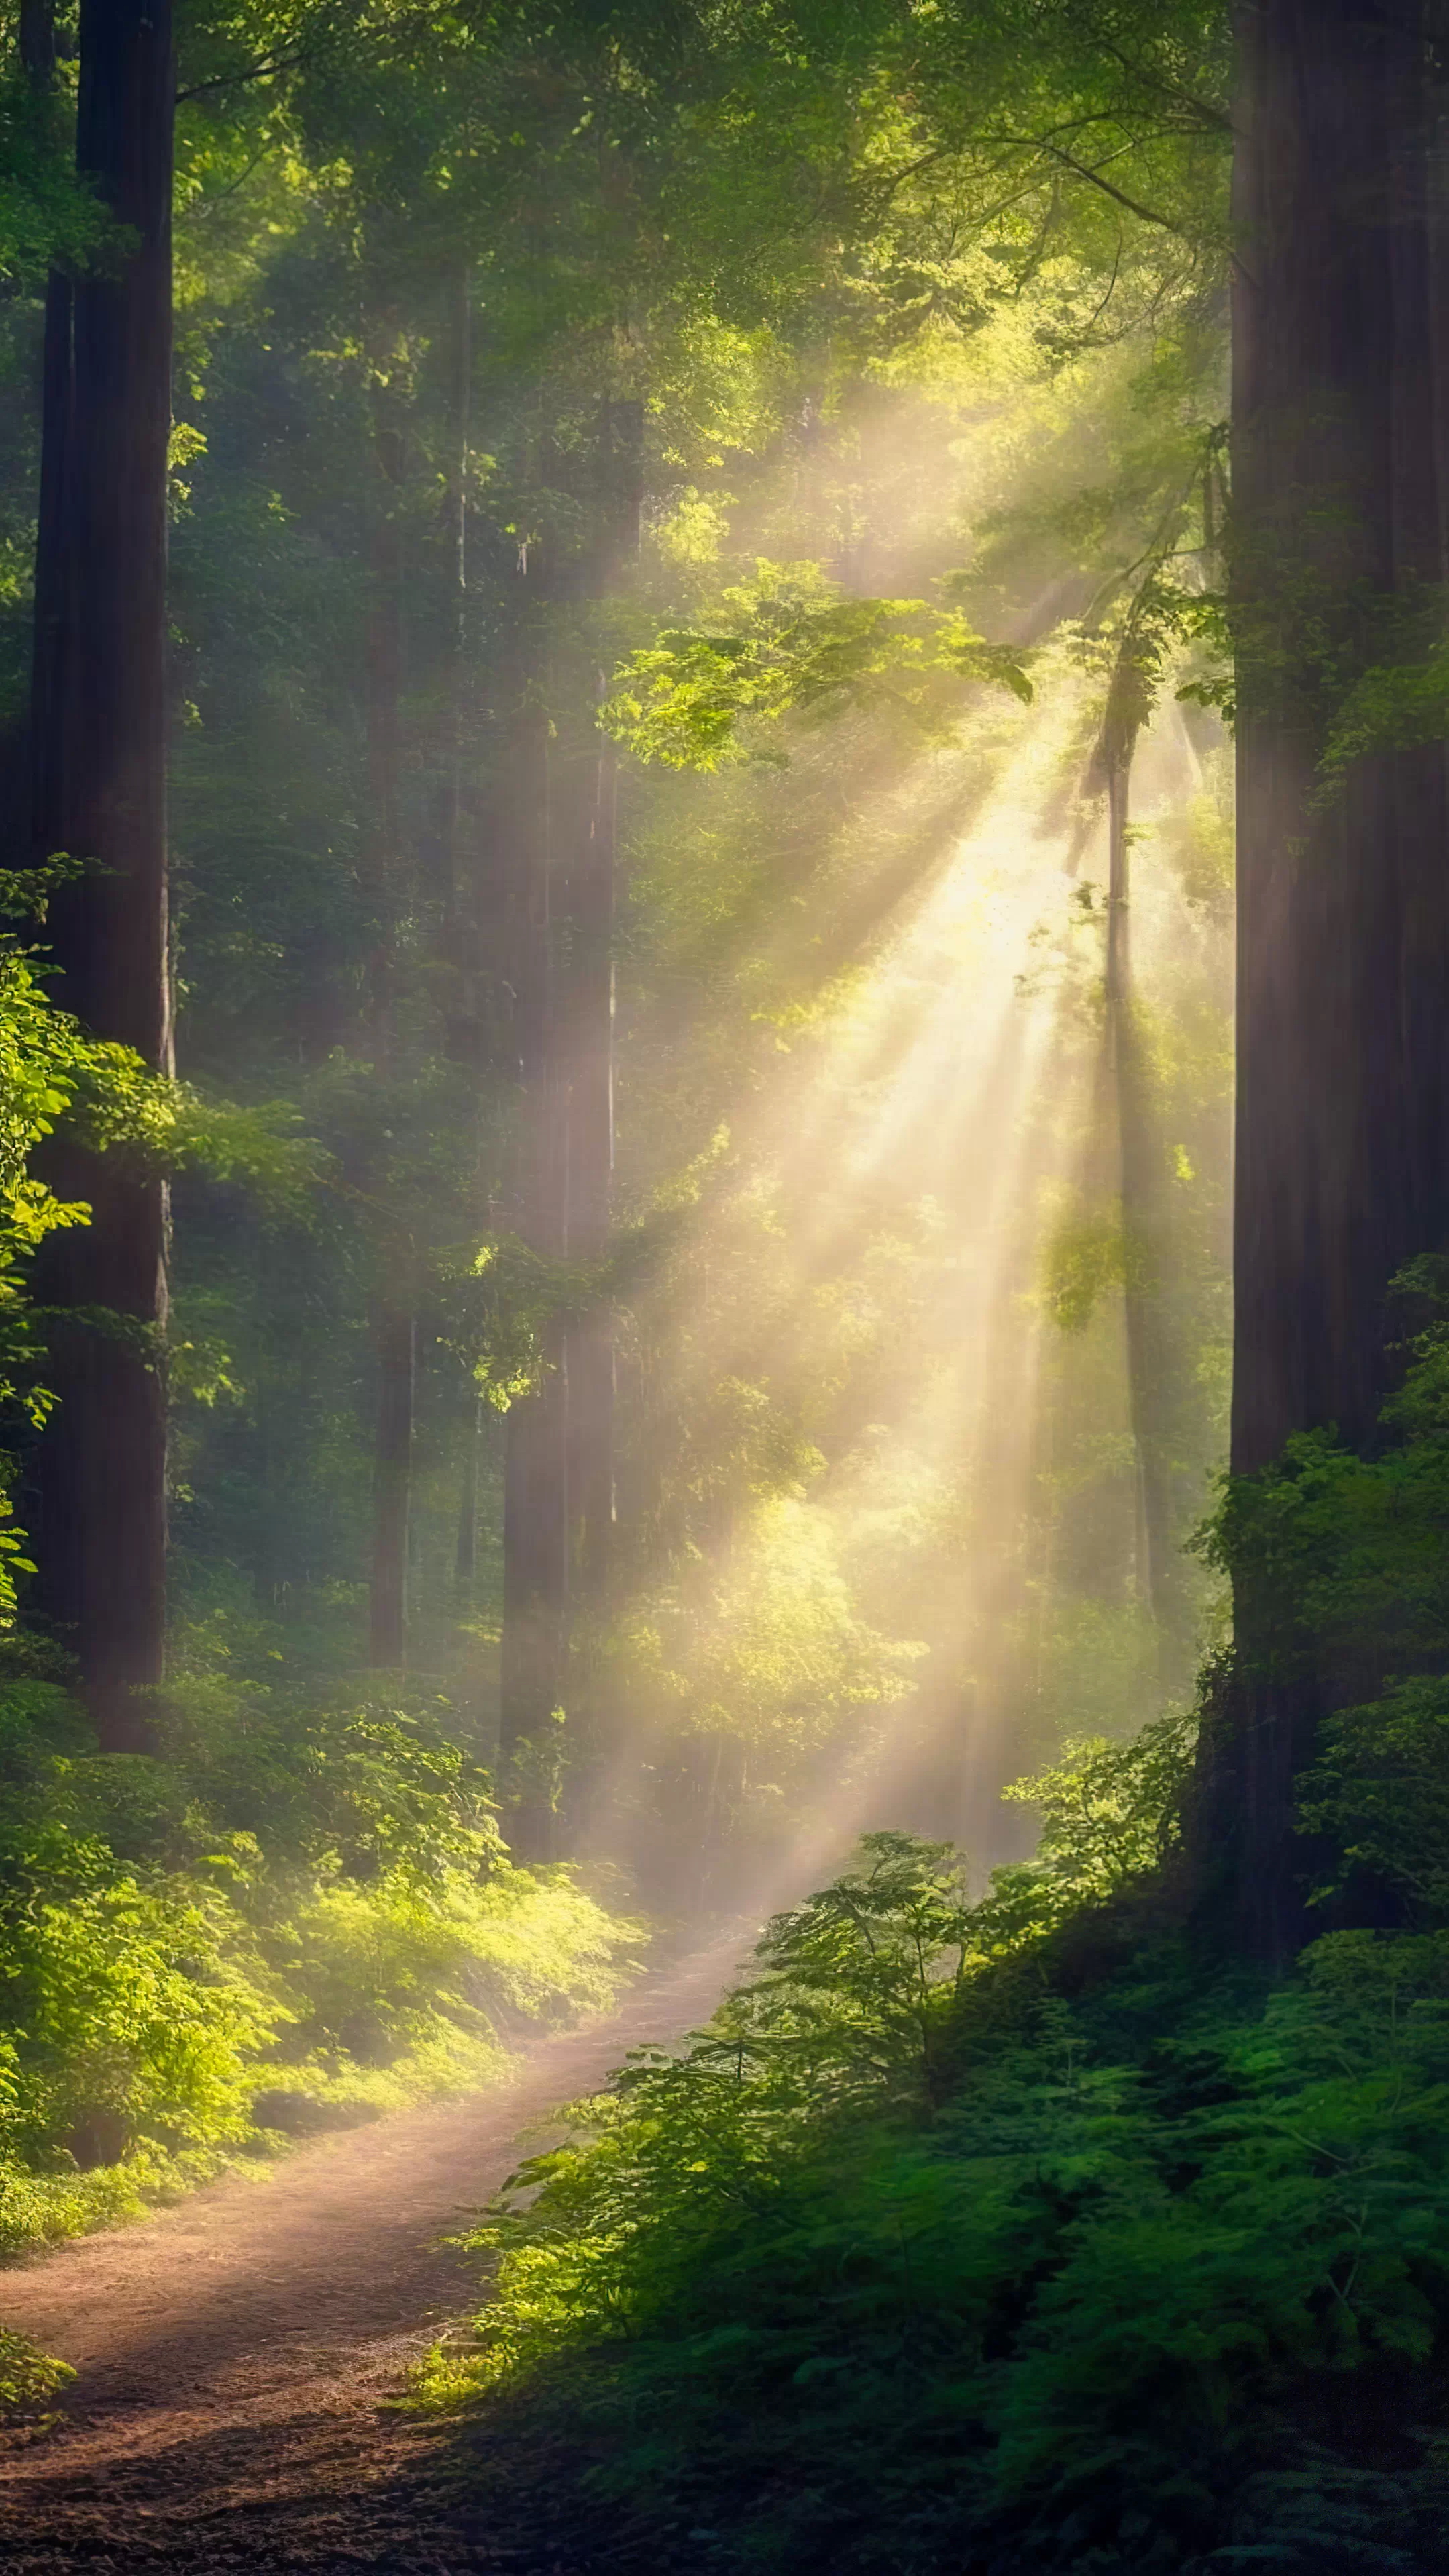 Ornez votre mobile avec notre fond d'écran de nature en HD, présentant une forêt dense baignée de lumière filtrant à travers une canopée de feuilles, et laissez votre écran devenir une porte vers le cœur de la forêt.